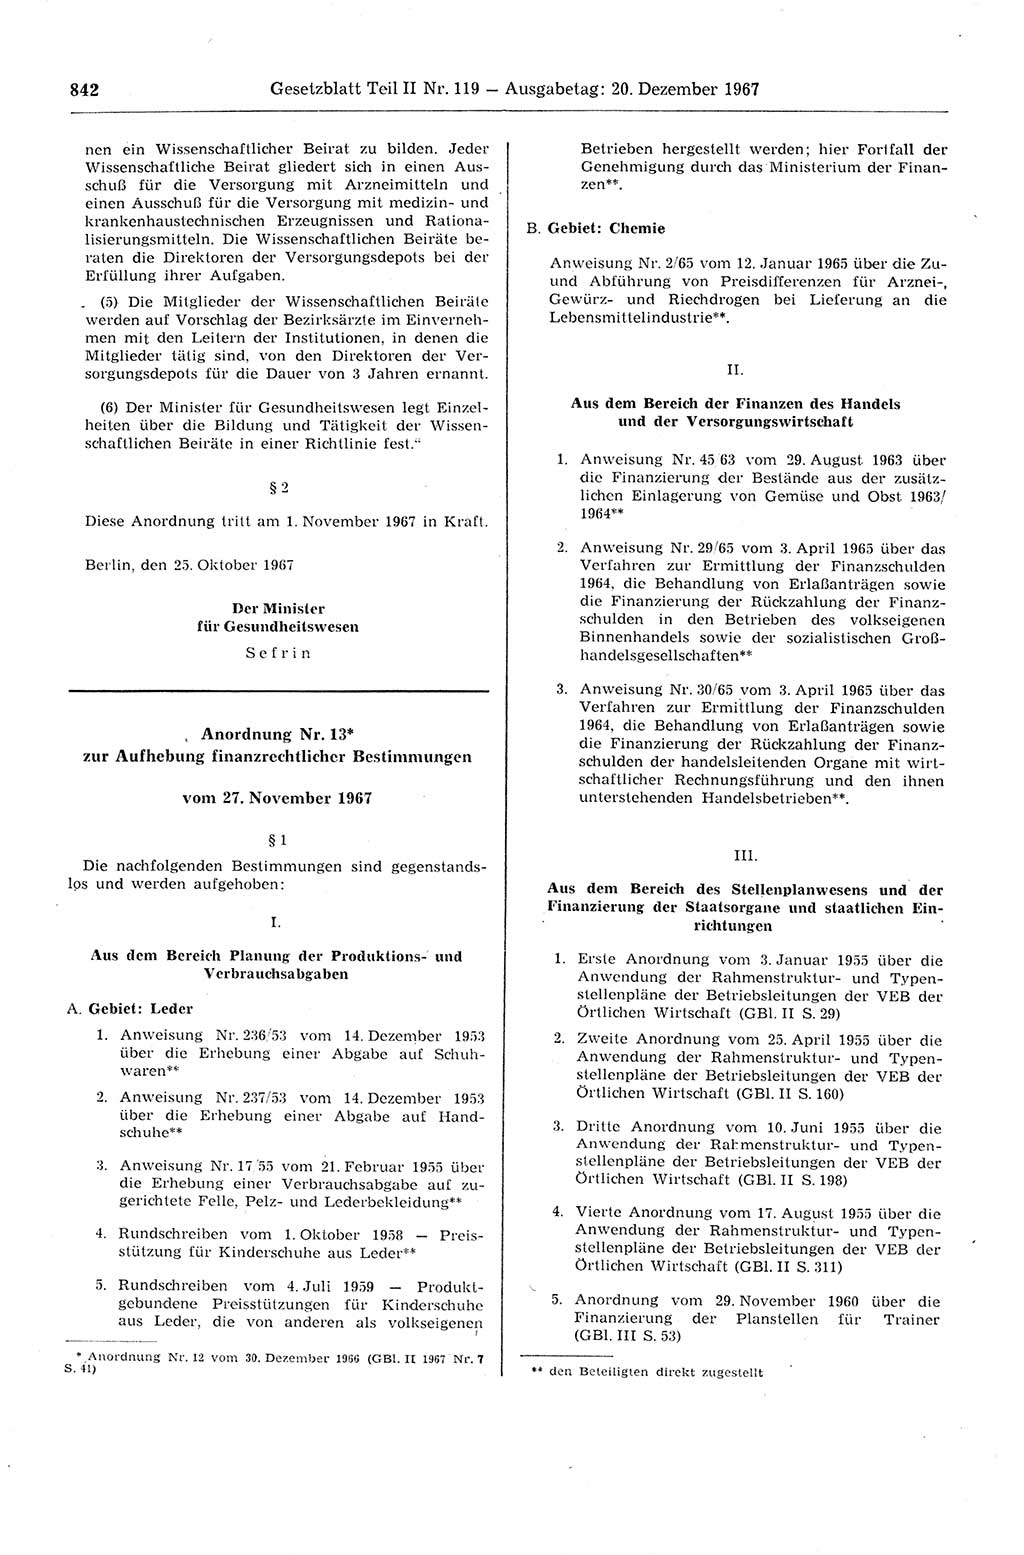 Gesetzblatt (GBl.) der Deutschen Demokratischen Republik (DDR) Teil ⅠⅠ 1967, Seite 842 (GBl. DDR ⅠⅠ 1967, S. 842)